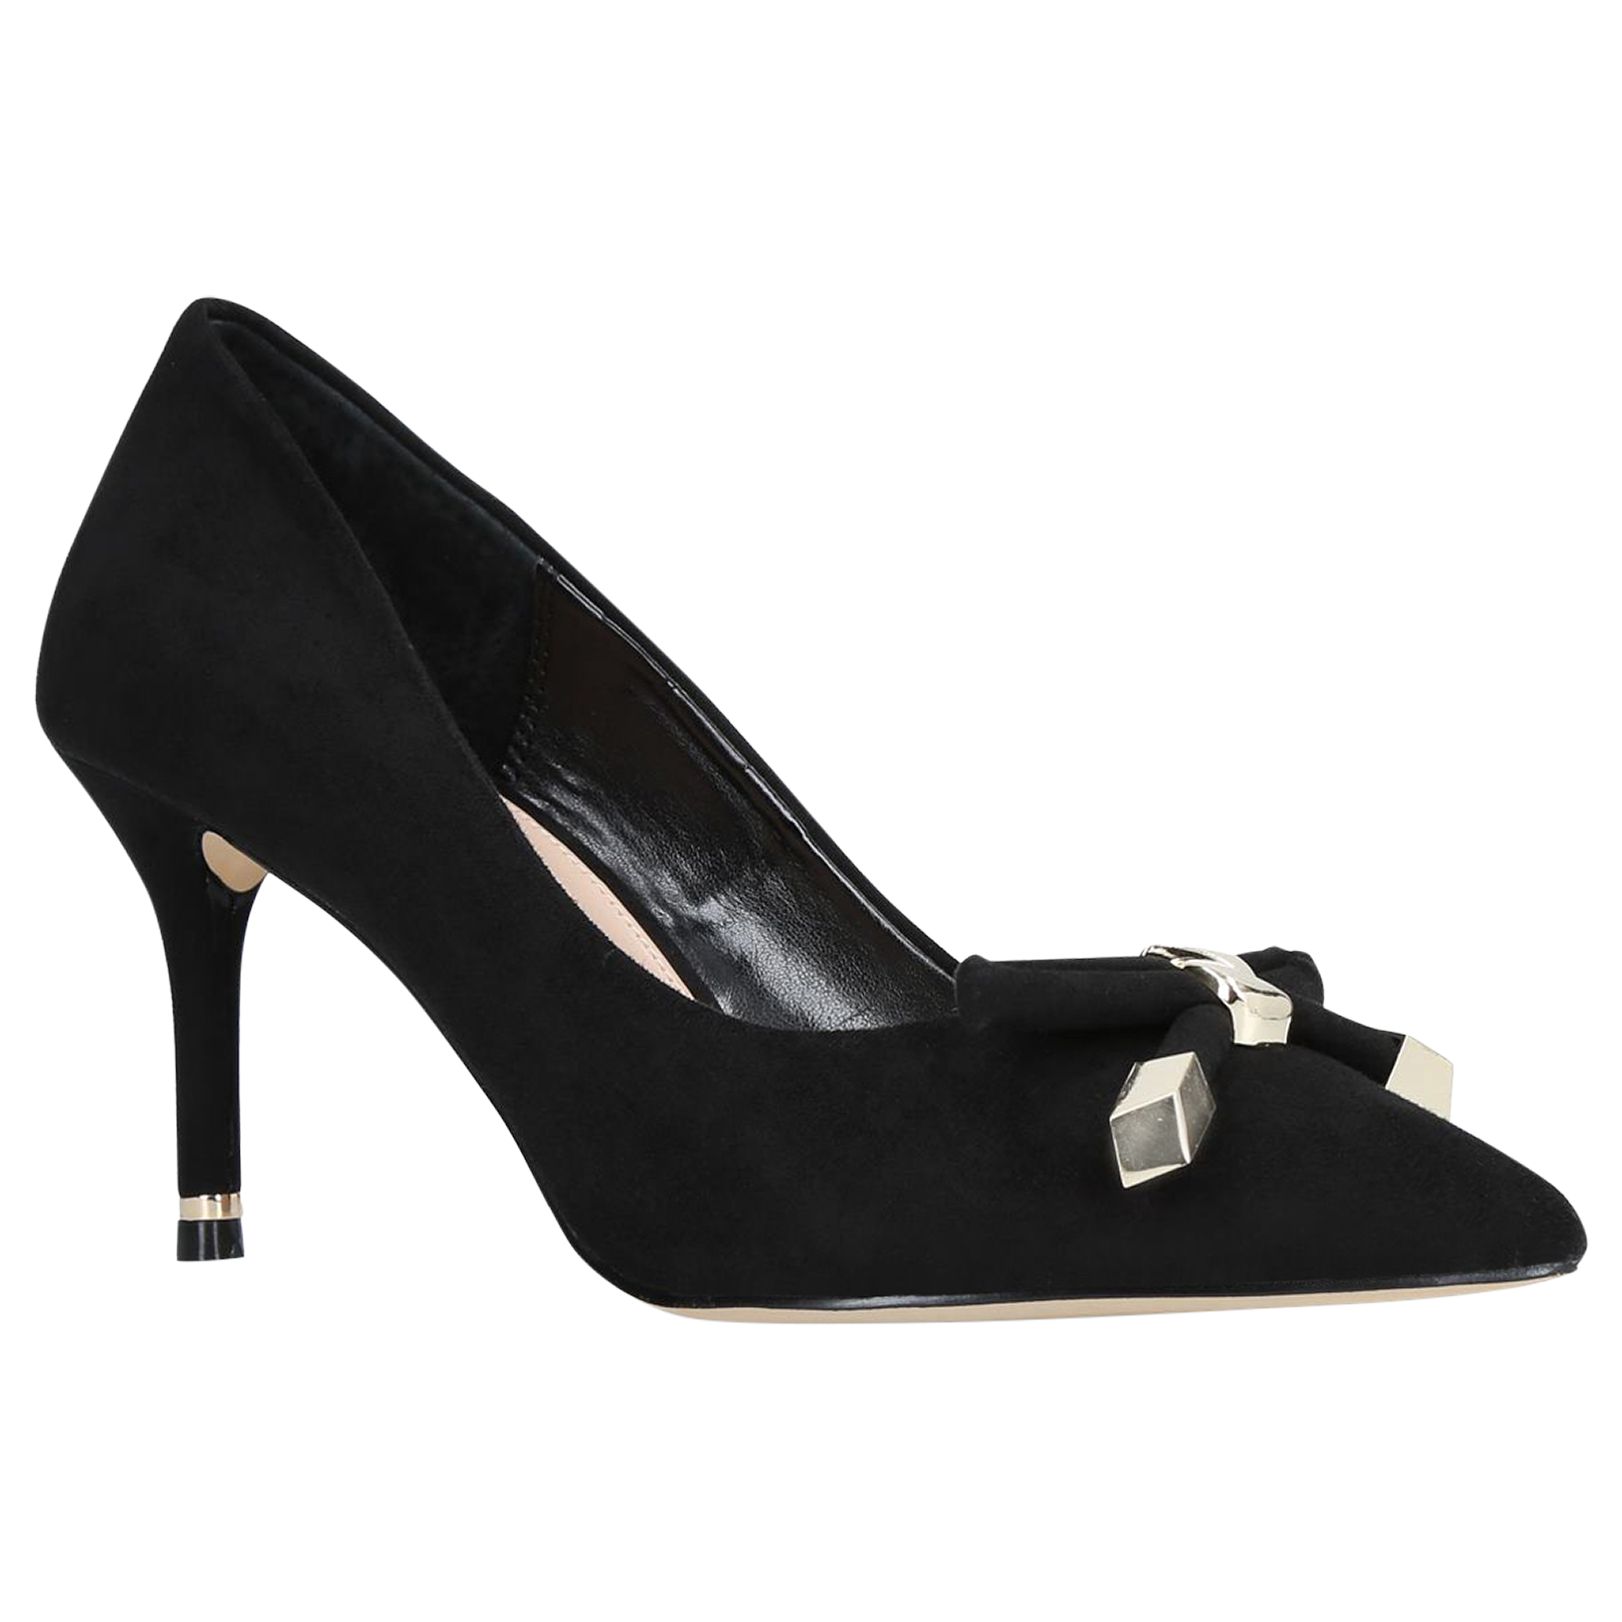 Carvela Kupid Bow Stiletto Heel Court Shoes, Black, 7